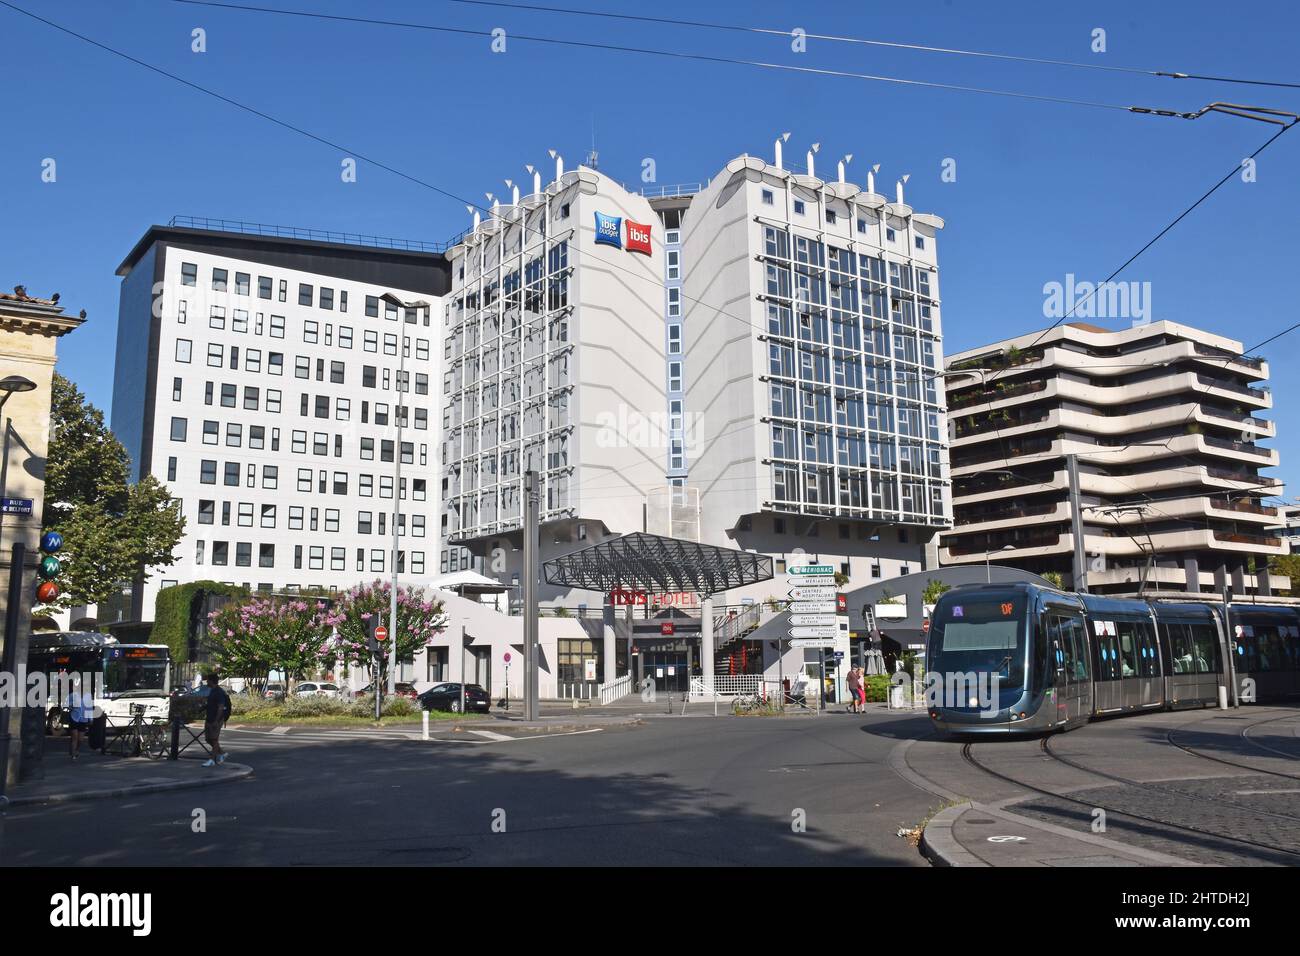 El hotel Ibis y Ibis Budger se encuentran en el barrio Mériadeck de Burdeos, Francia, a la izquierda de las oficinas de Bordeaux Metropole, en el bloque de apartamentos de la derecha Foto de stock